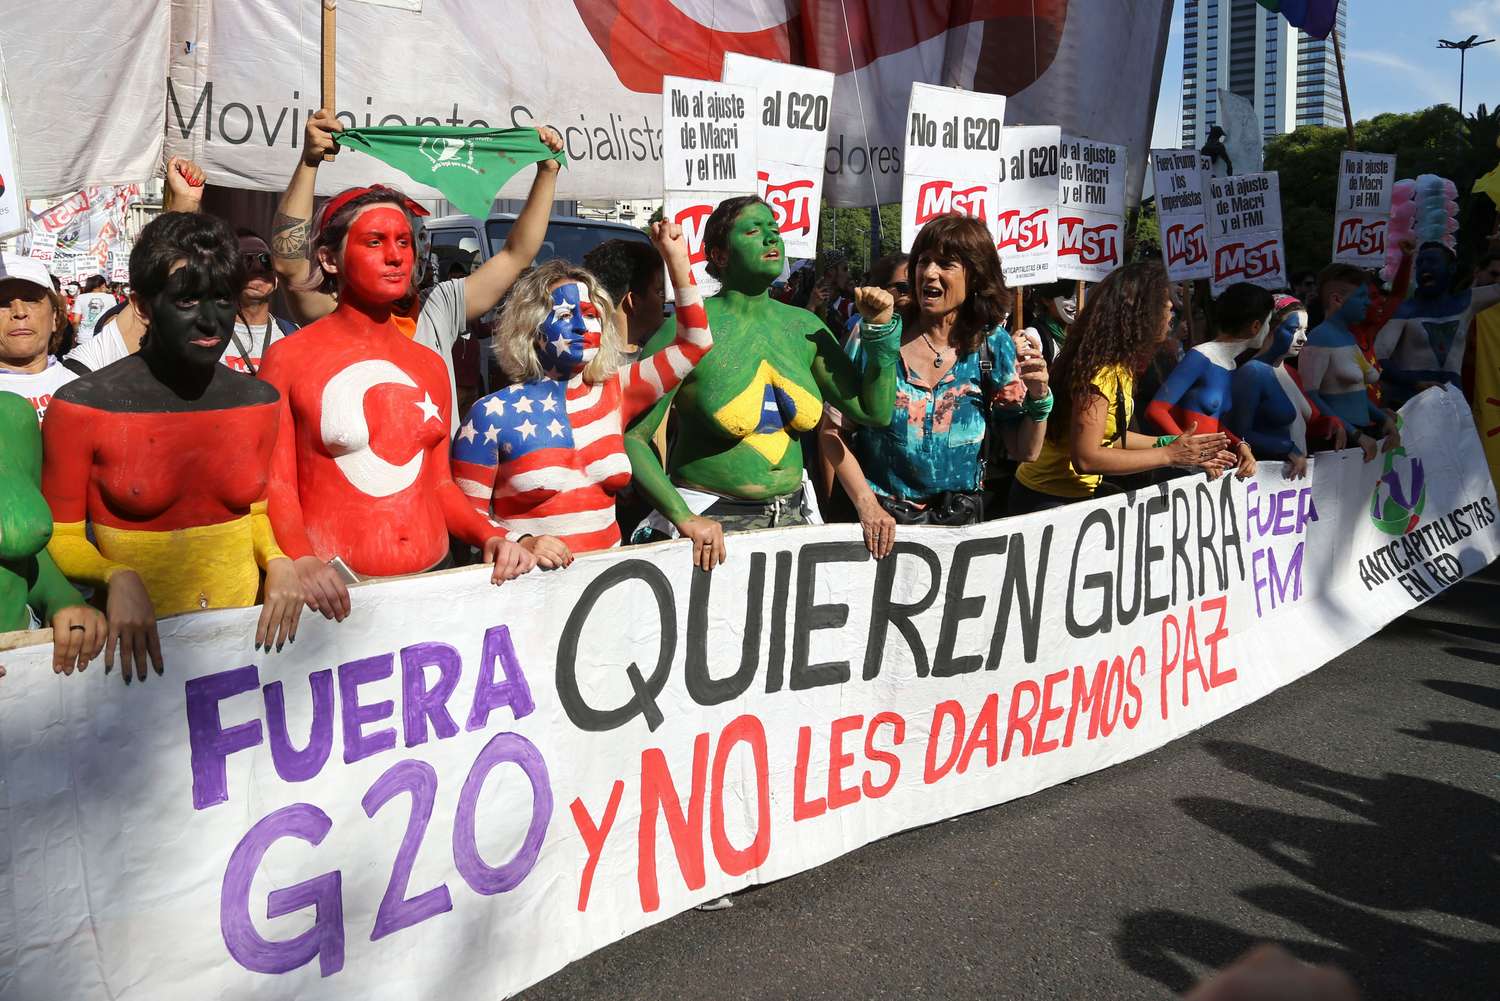 La izquierda dominó la marcha anti-G20, con escasa presencia del kirchnerismo